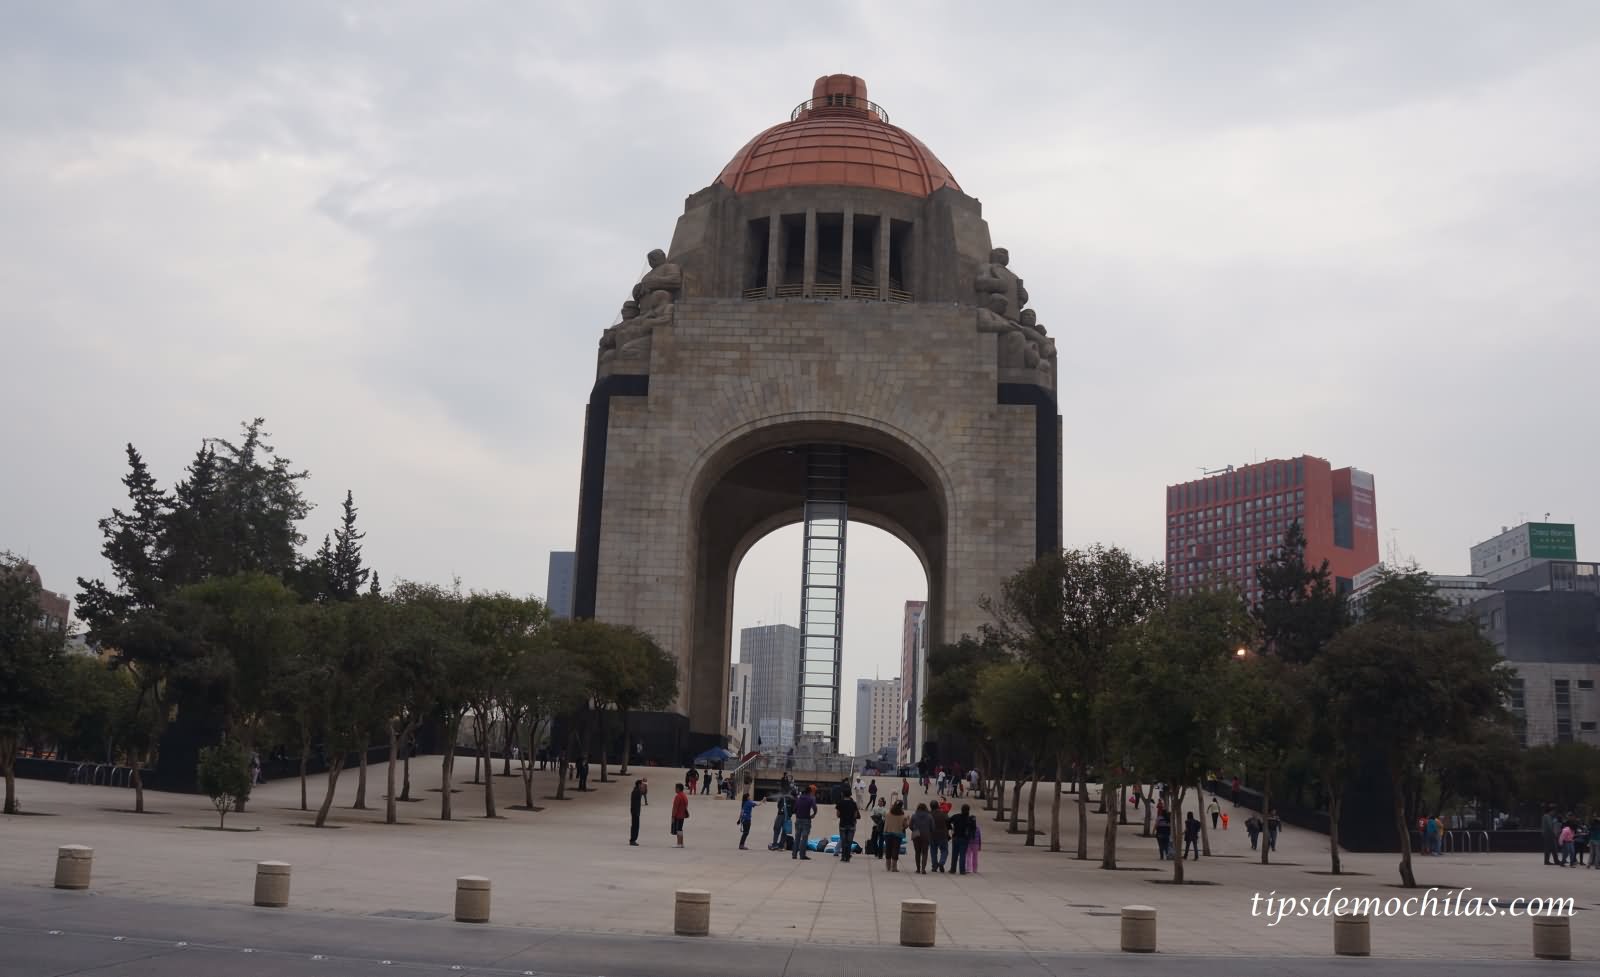 Amazing Front Picture Of The Monumento a la Revolucion In Mexico